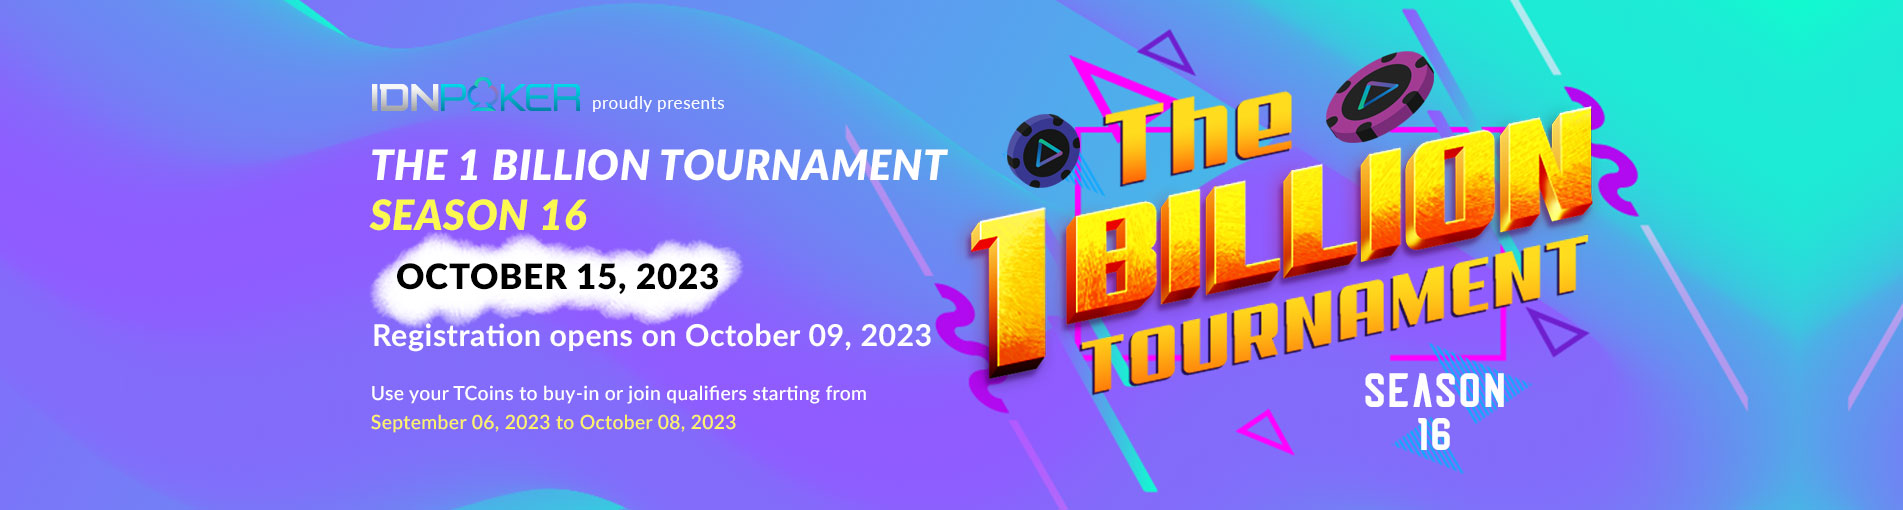 The 1 Billion Tournament Season 16